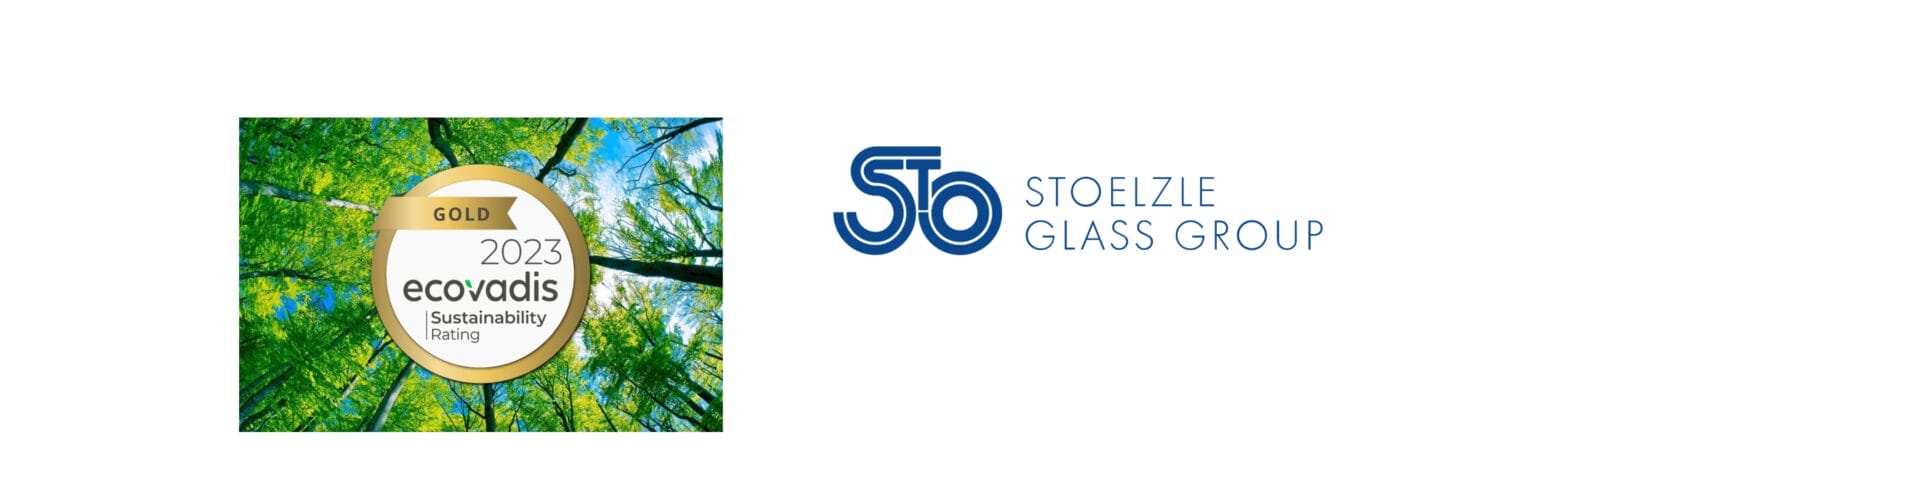 Euro Cosmetics - Stoelzle Glass Group - EcoVadis